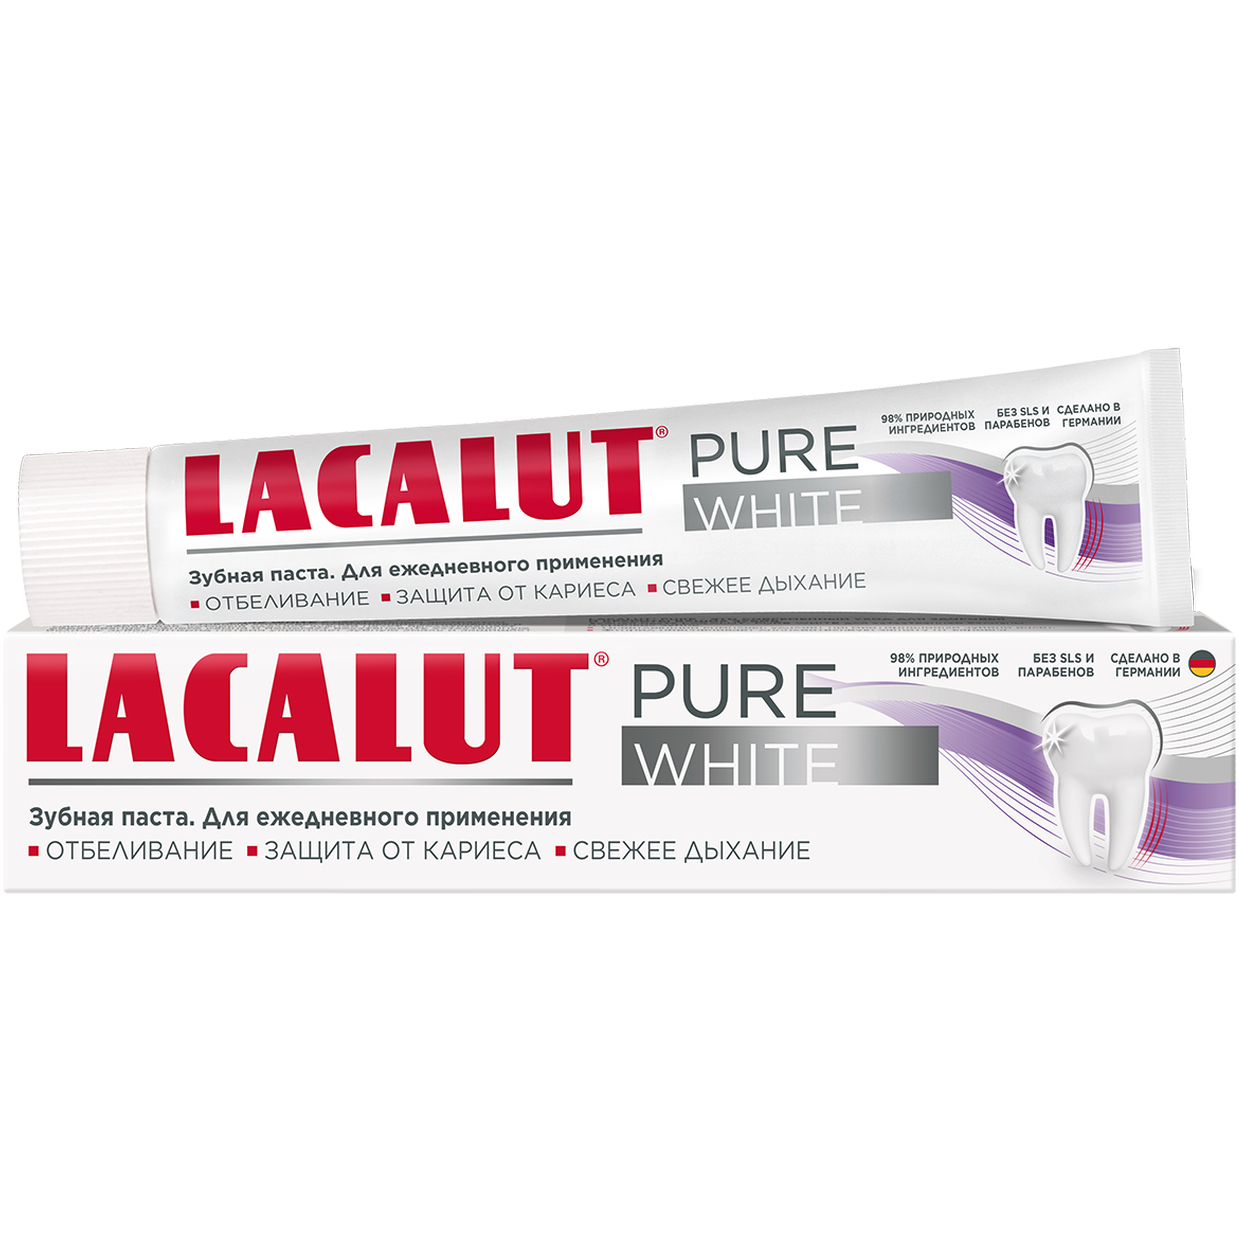 Зубная паста Lacalut Pure White 75 мл зубная паста lacalut джуниор сладкая ягода 8 75 мл